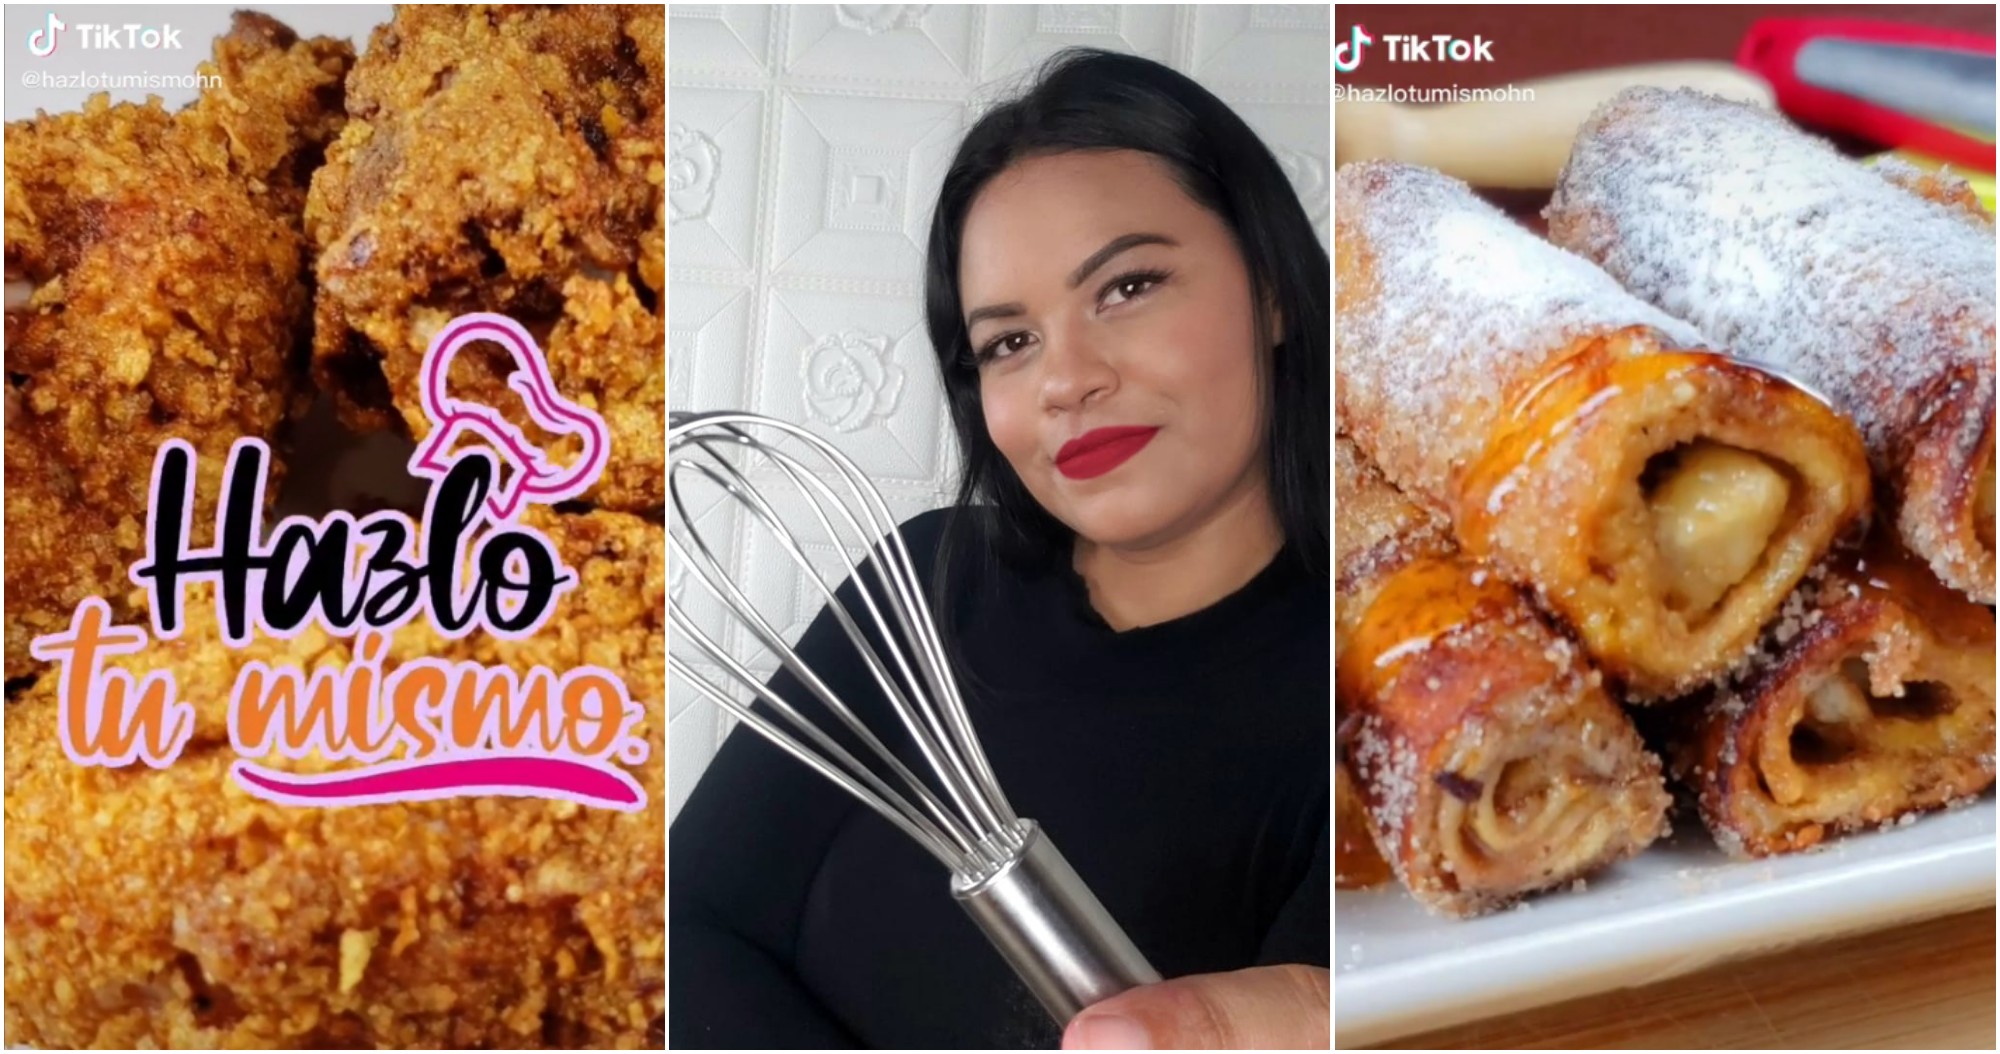 Hondureña destaca en TikTok con sus deliciosas recetas